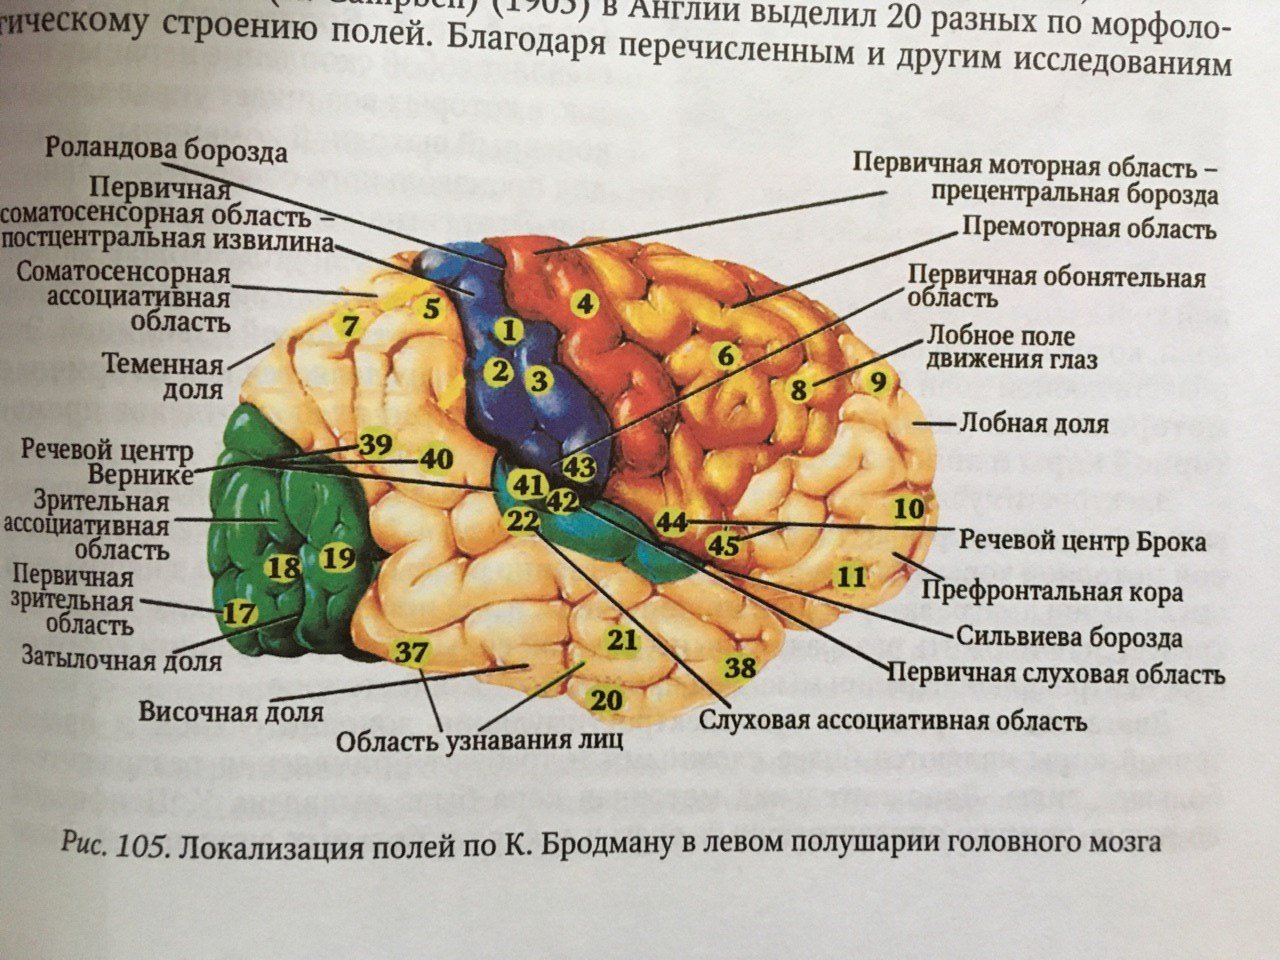 Извилины долей мозга. Сильвиева борозда мозга. Головной мозг борозды роландова. Доли борозды и извилины мозга. Борозды доли извилины коры головного мозга.